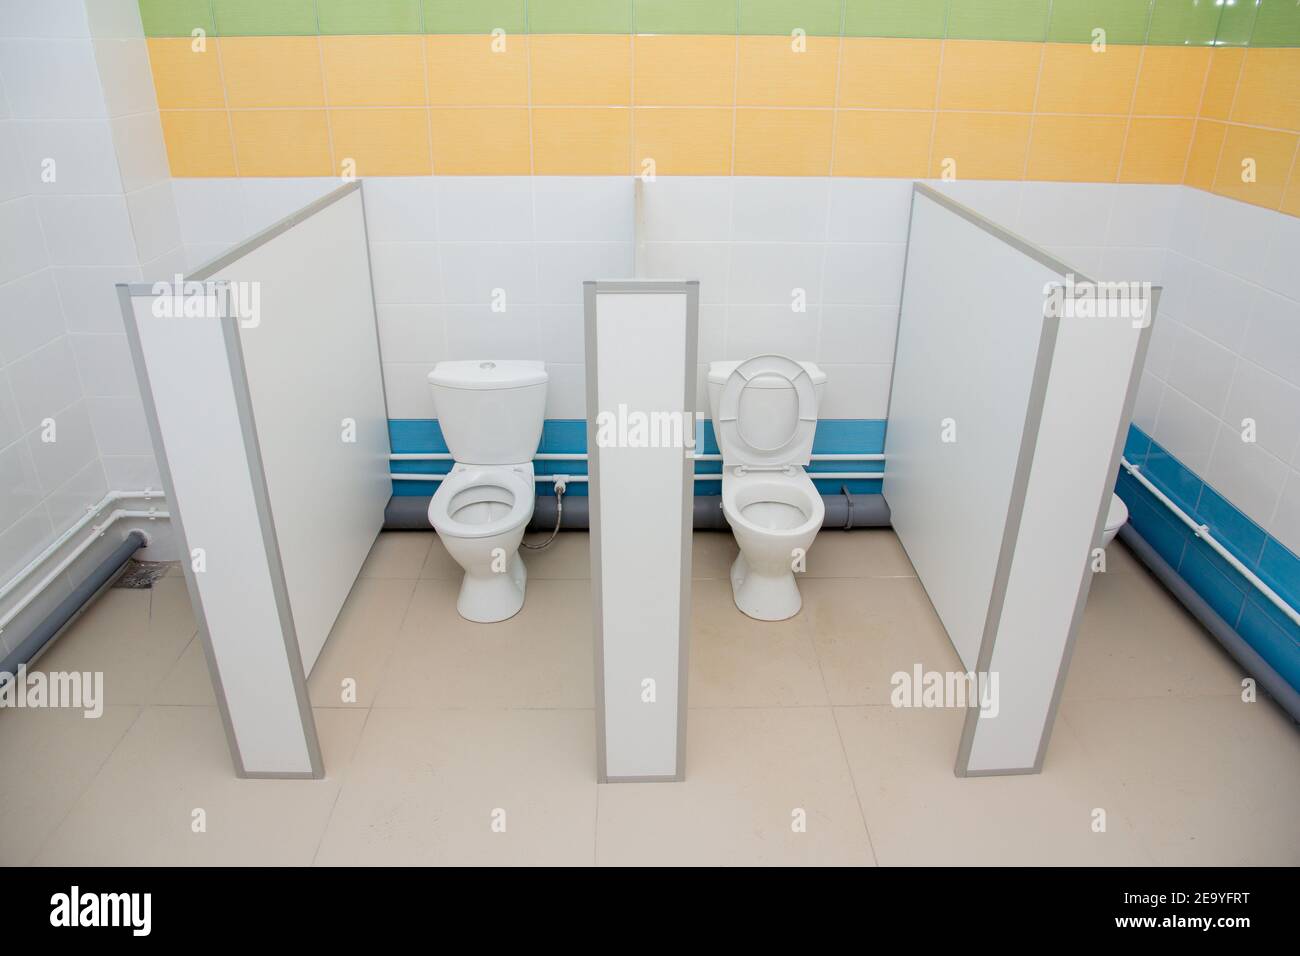 Toilette im Kindergarten. Toilette im Kindergarten. Kinderhygiene in einer  Vorschuleinrichtung Stockfotografie - Alamy